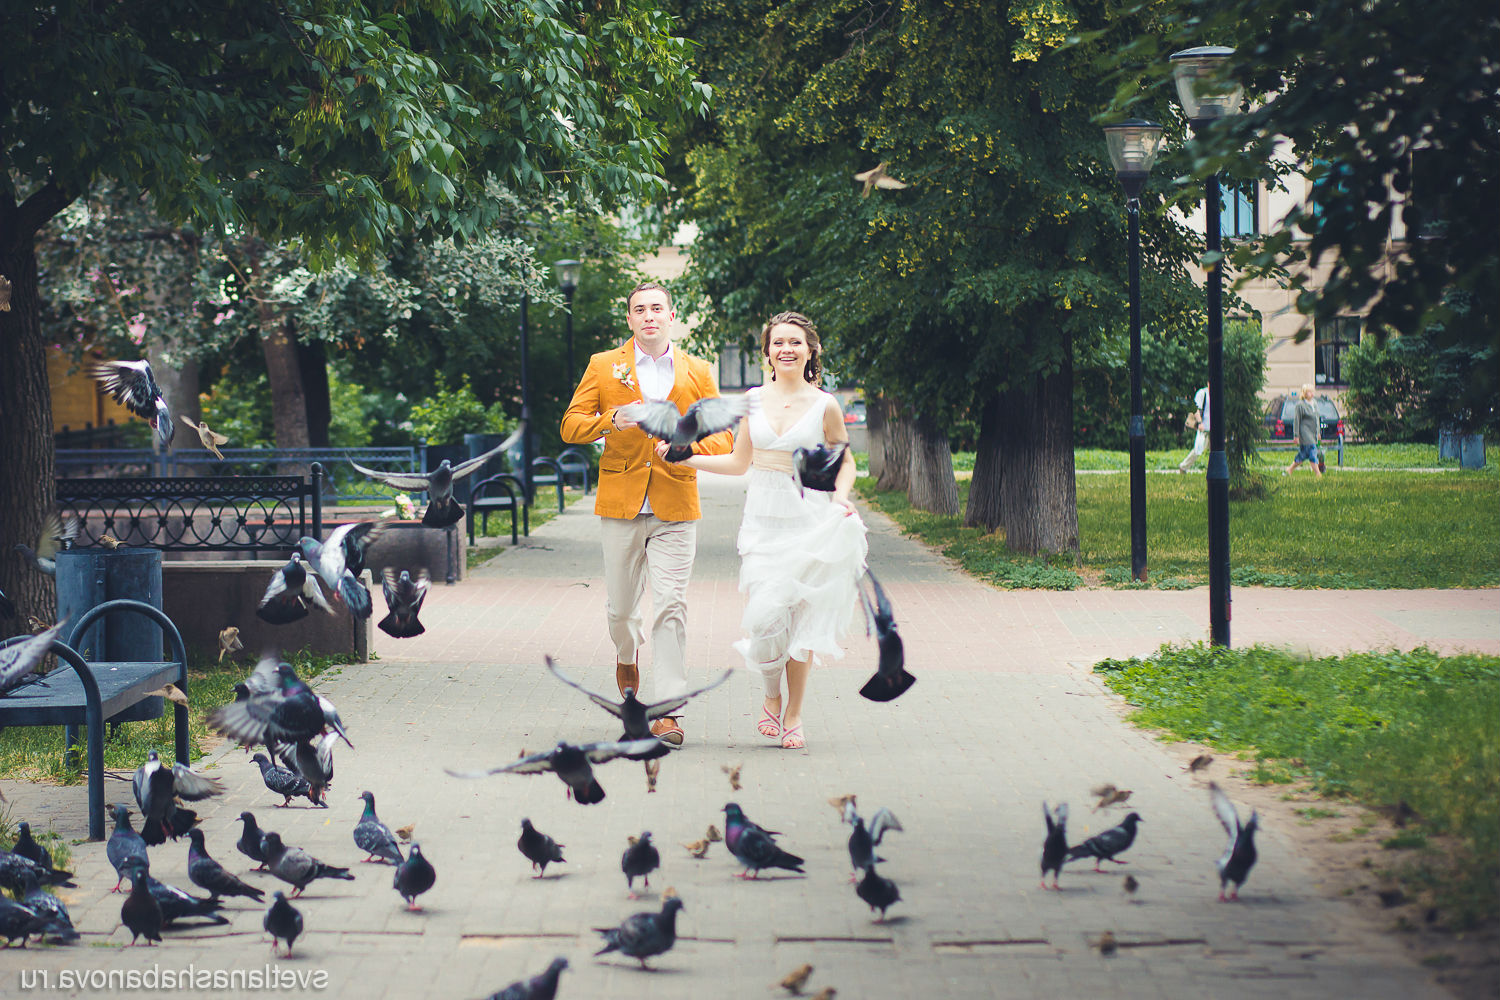 Отличное место для свадебной прогулки и фотосессии в Нижнем Новгороде